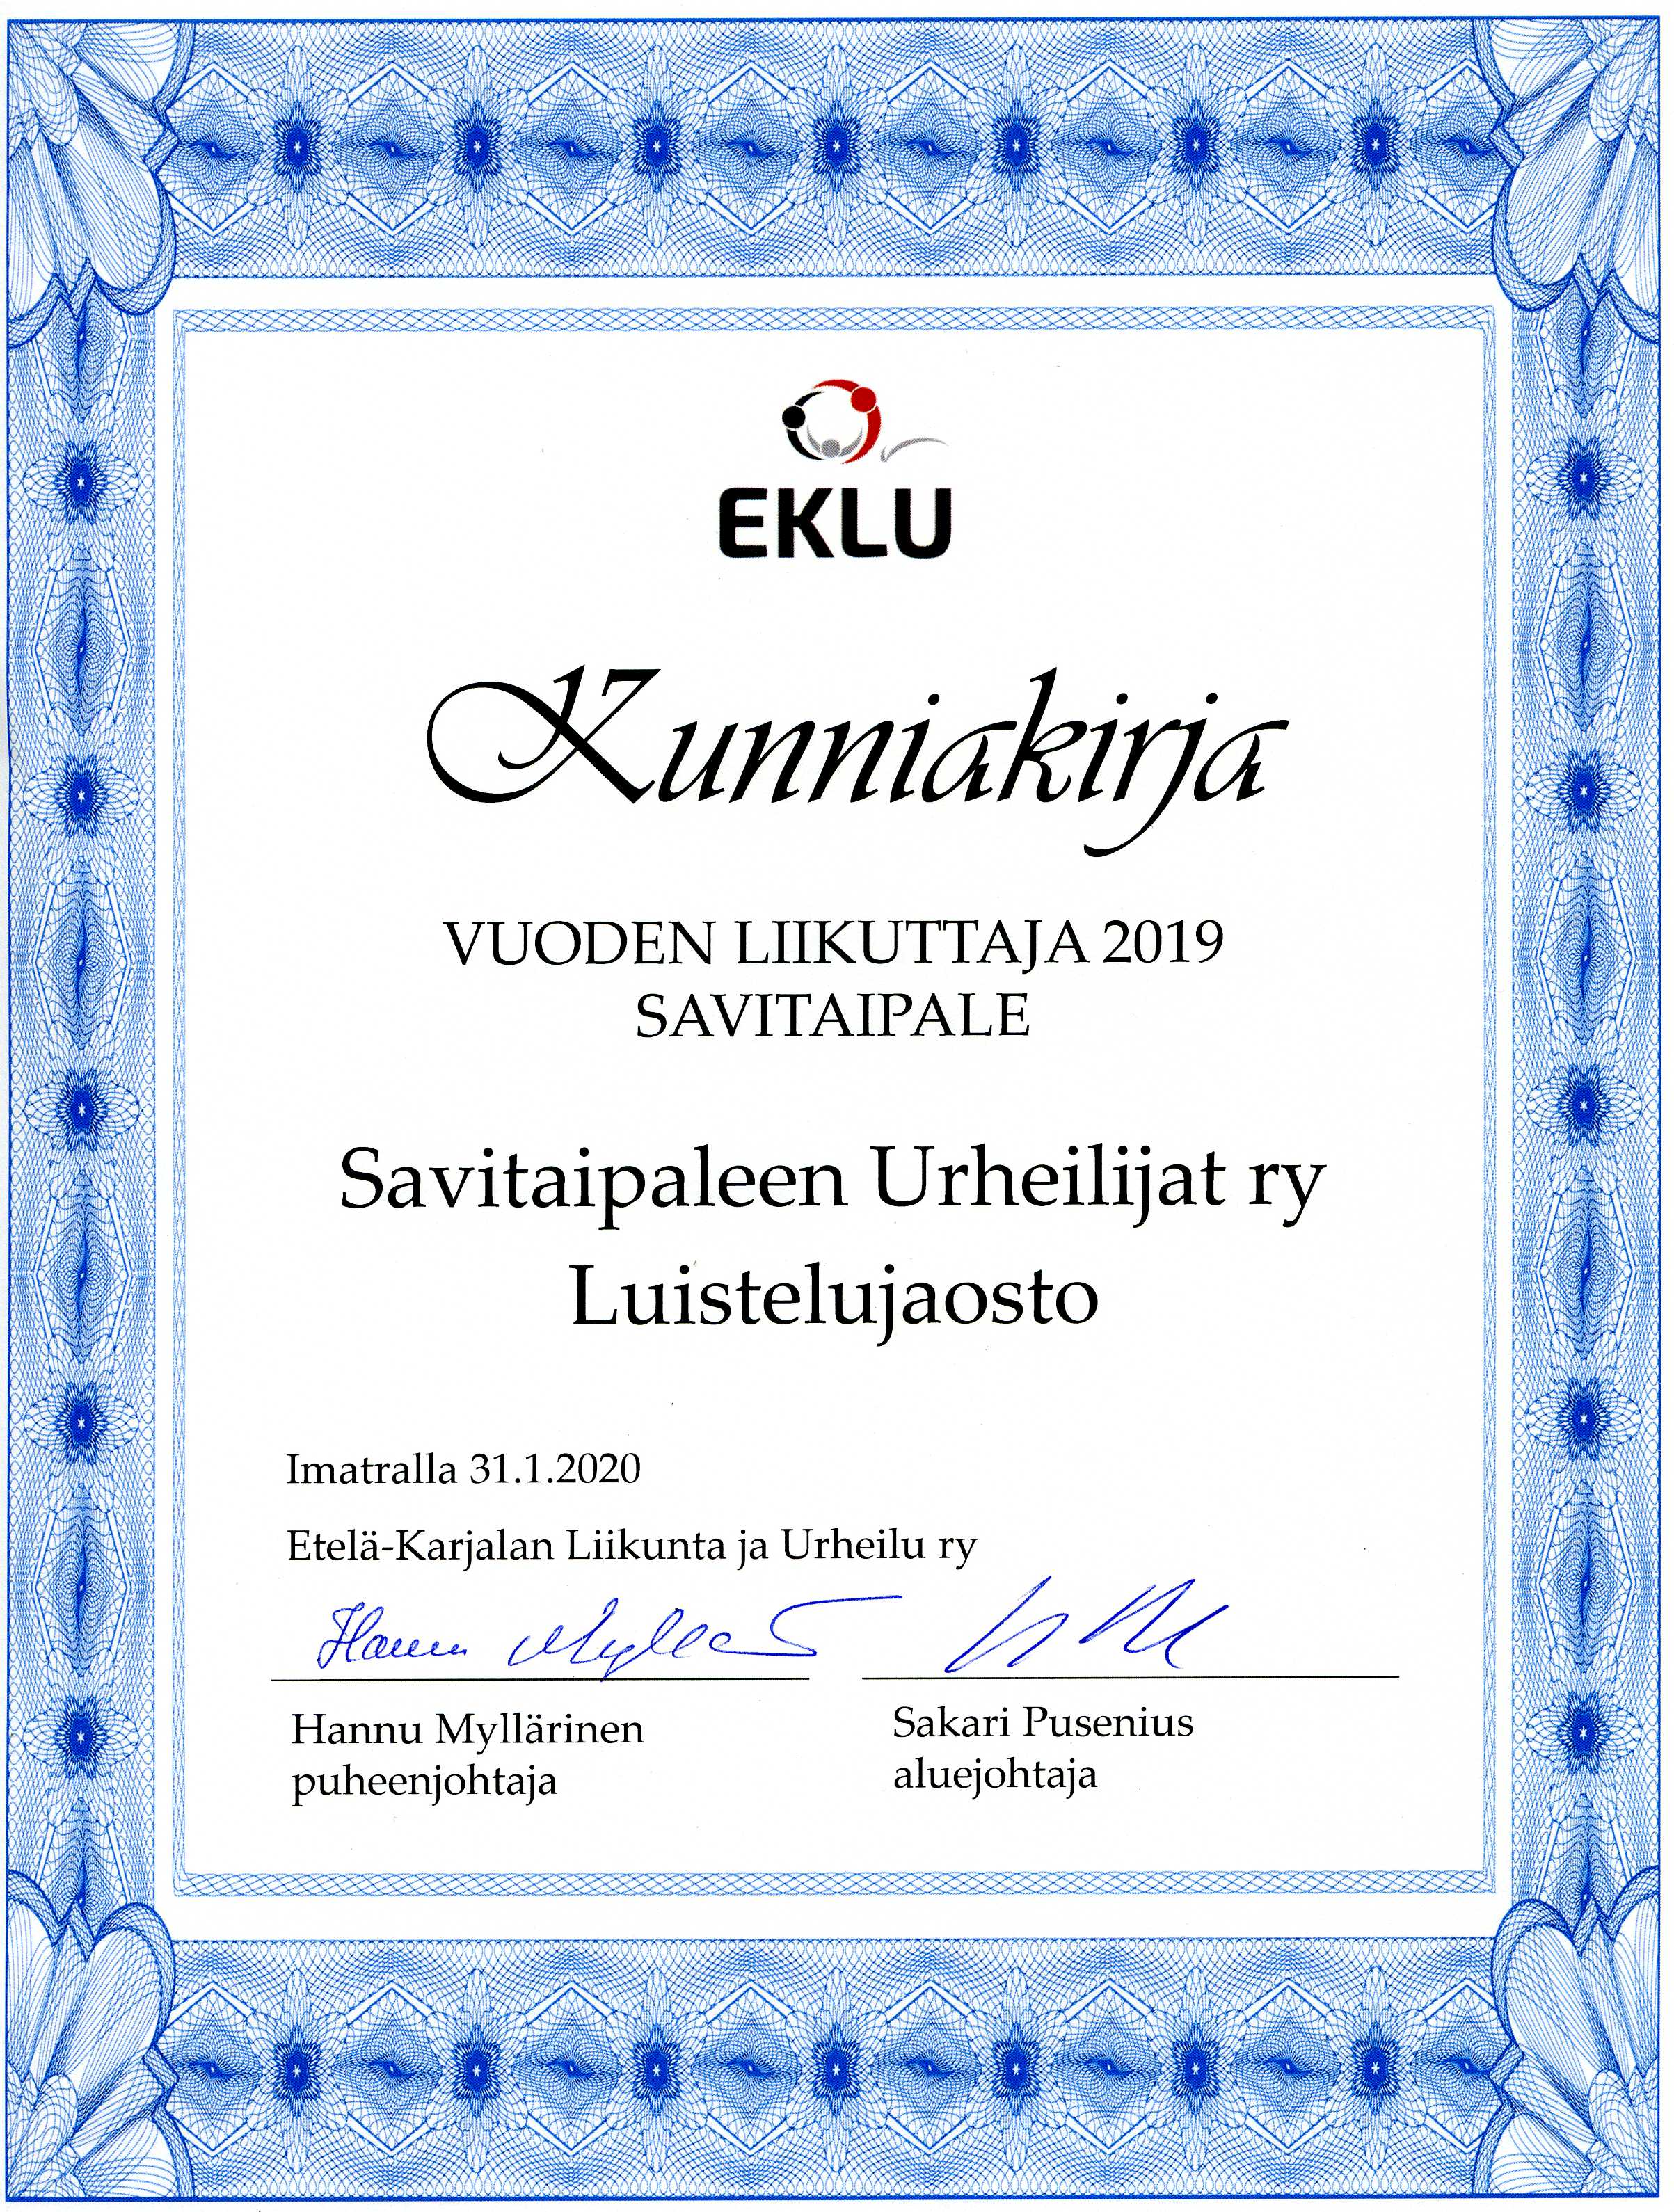 EKLU Vuoden liikuttaja 2019 Savitaipale